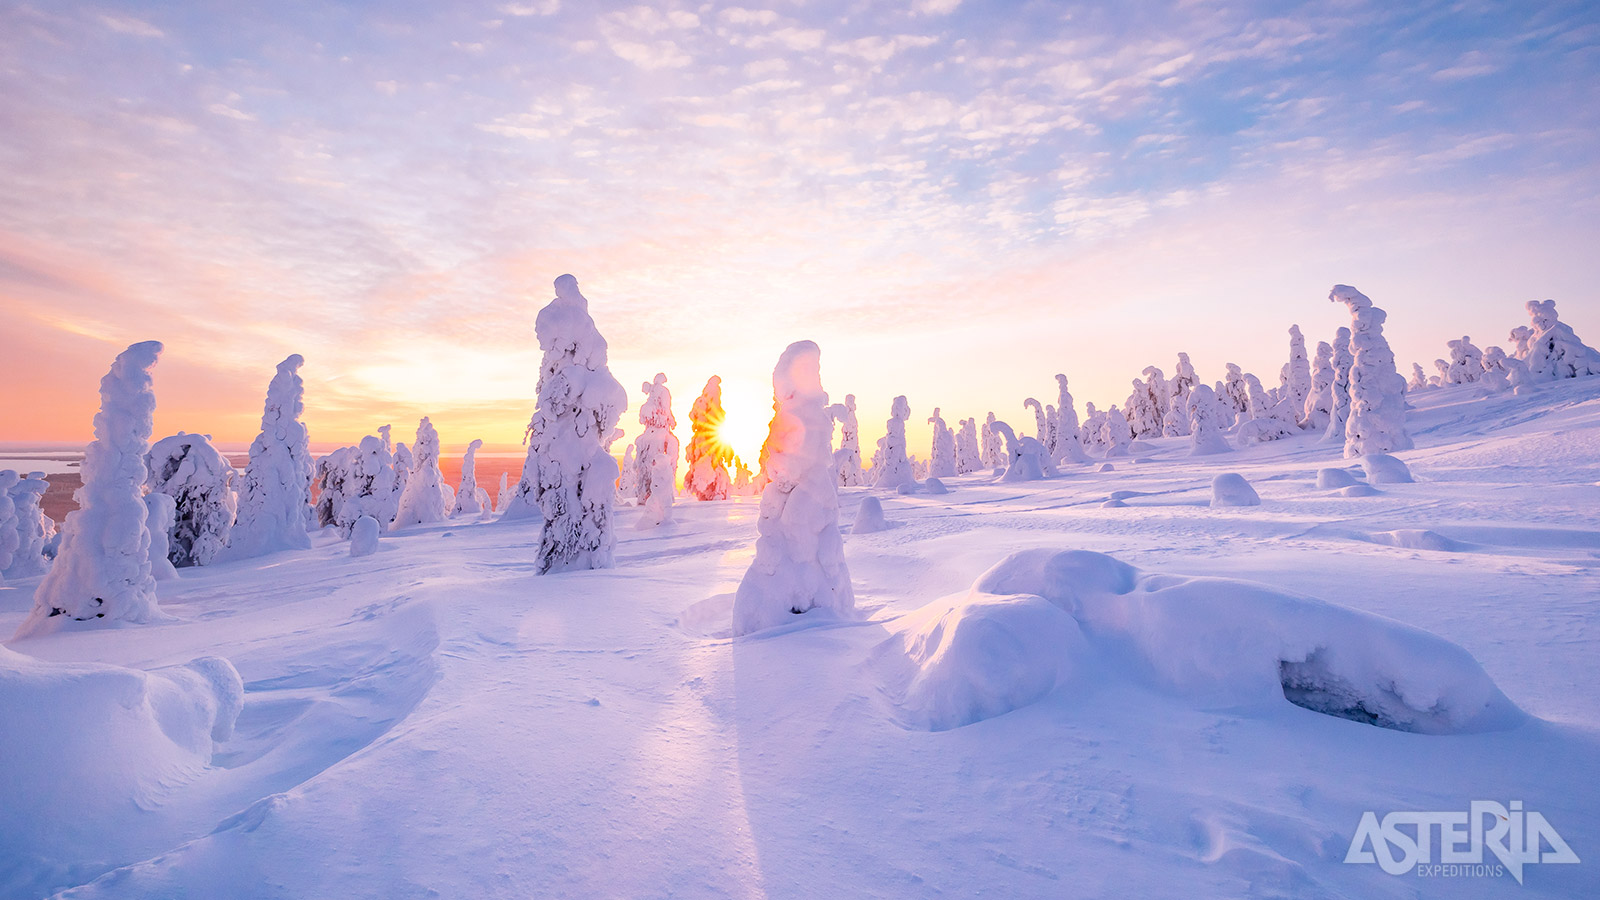 De streek van Ruka biedt één van de mooiste natuurgebieden en winterlandschappen van gans Noord-Scandinavië